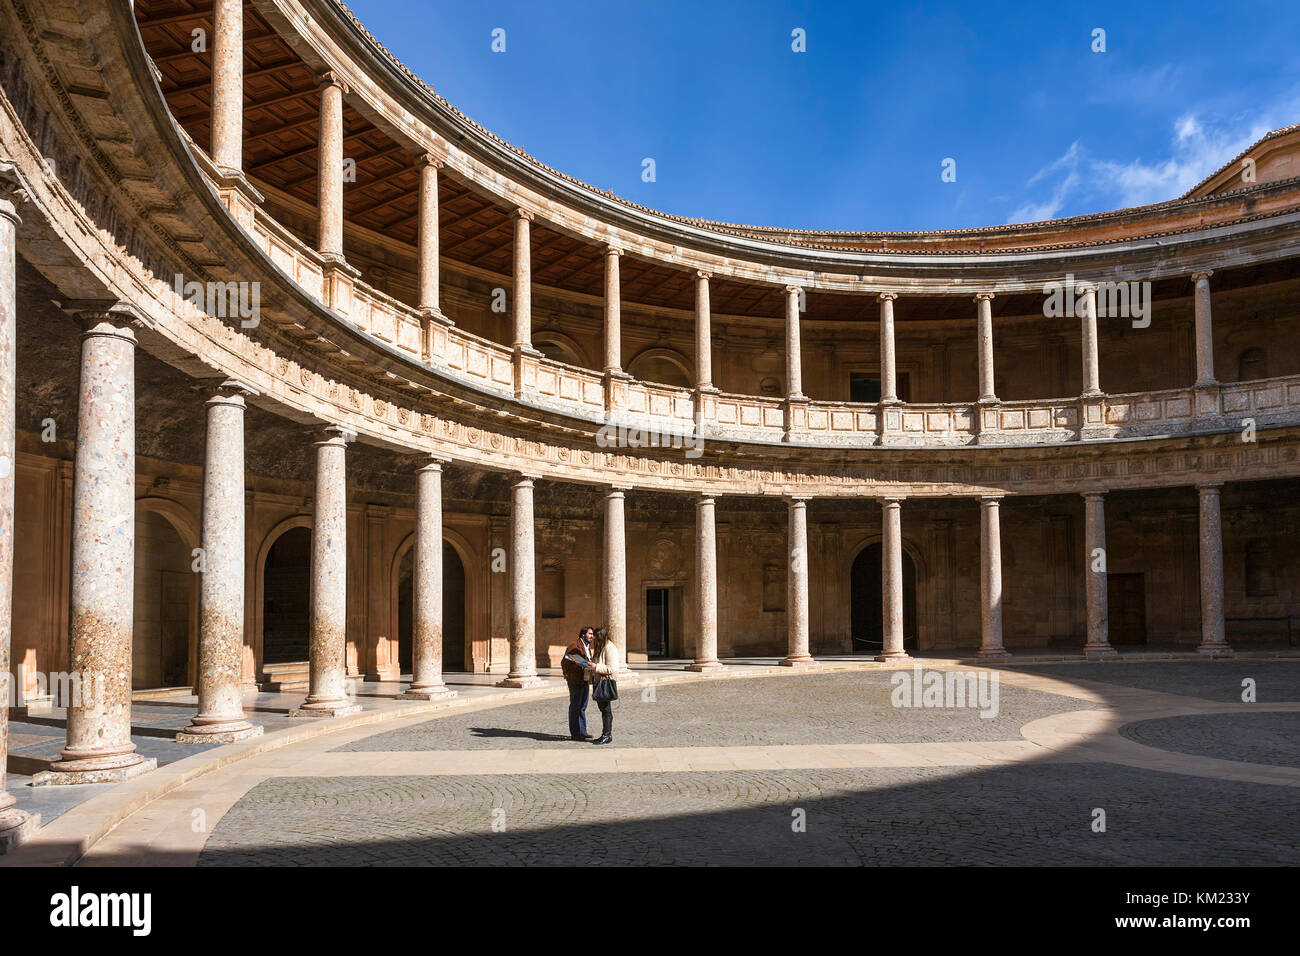 La cour intérieure circulaire du Palacio de Carlos V (Palais Charles V) dans le complexe de l'Alhambra, Grenade, Andalousie, Espagne Banque D'Images